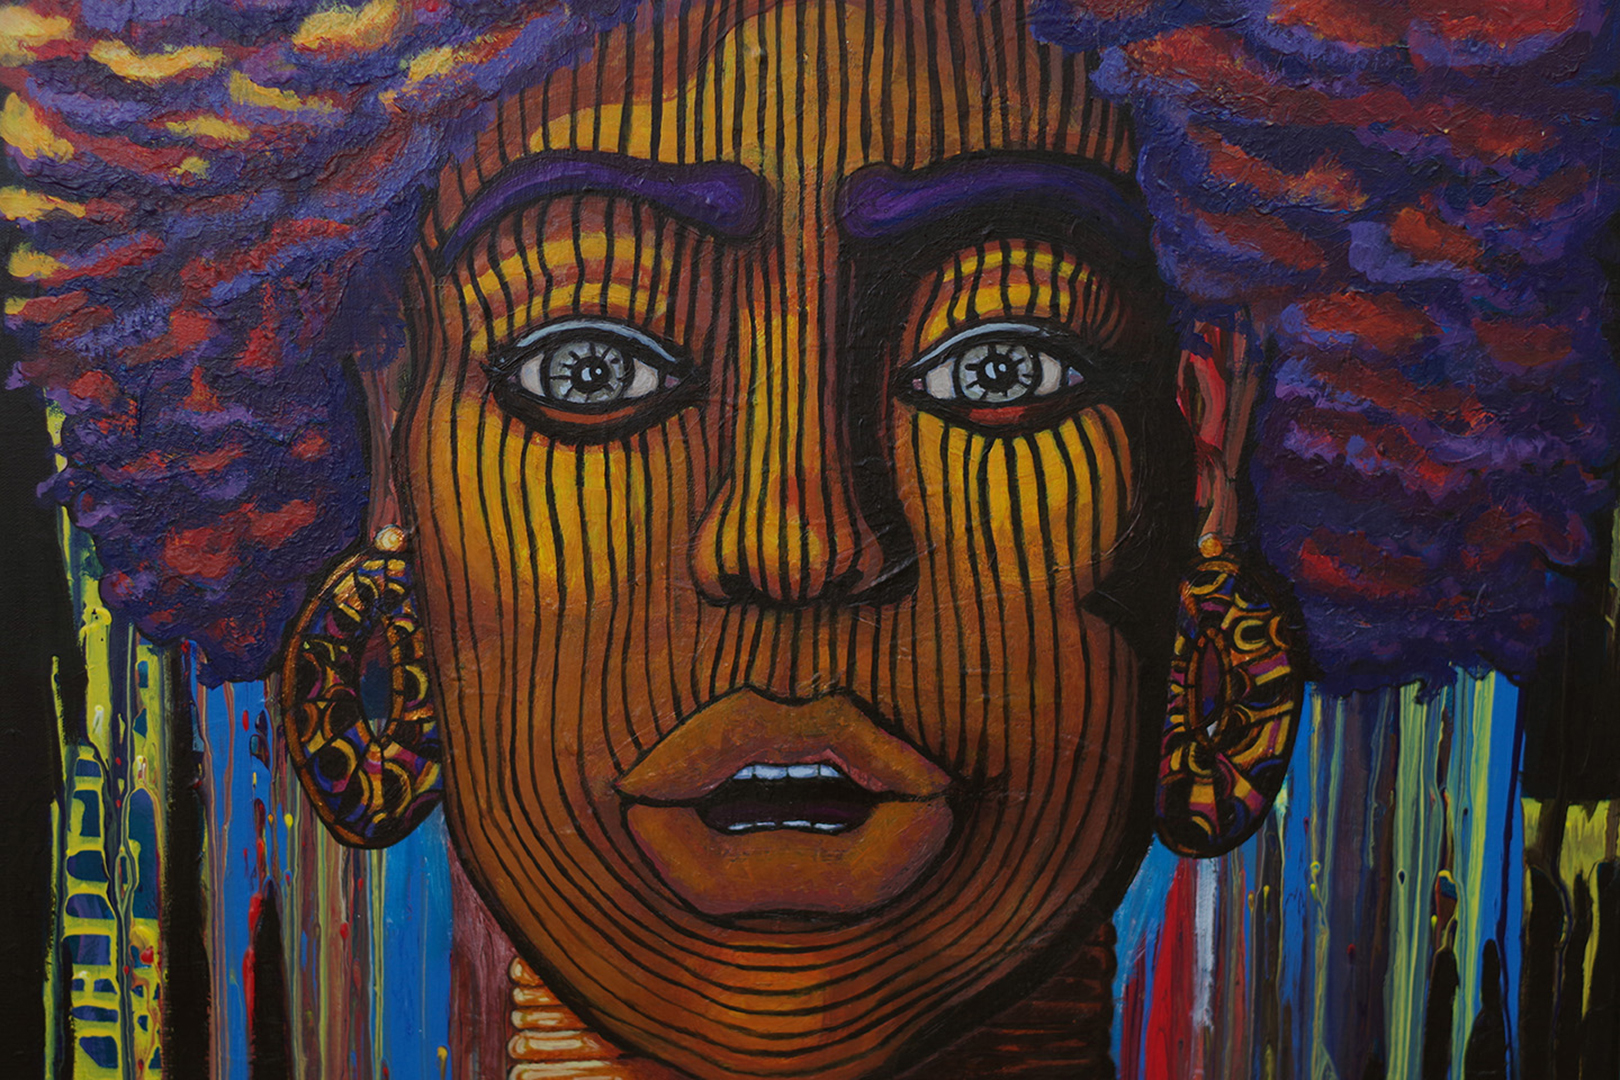 Portrait de femme, acrylique sur toile, 100 x 65 cm, septembre 2019, Lille, France